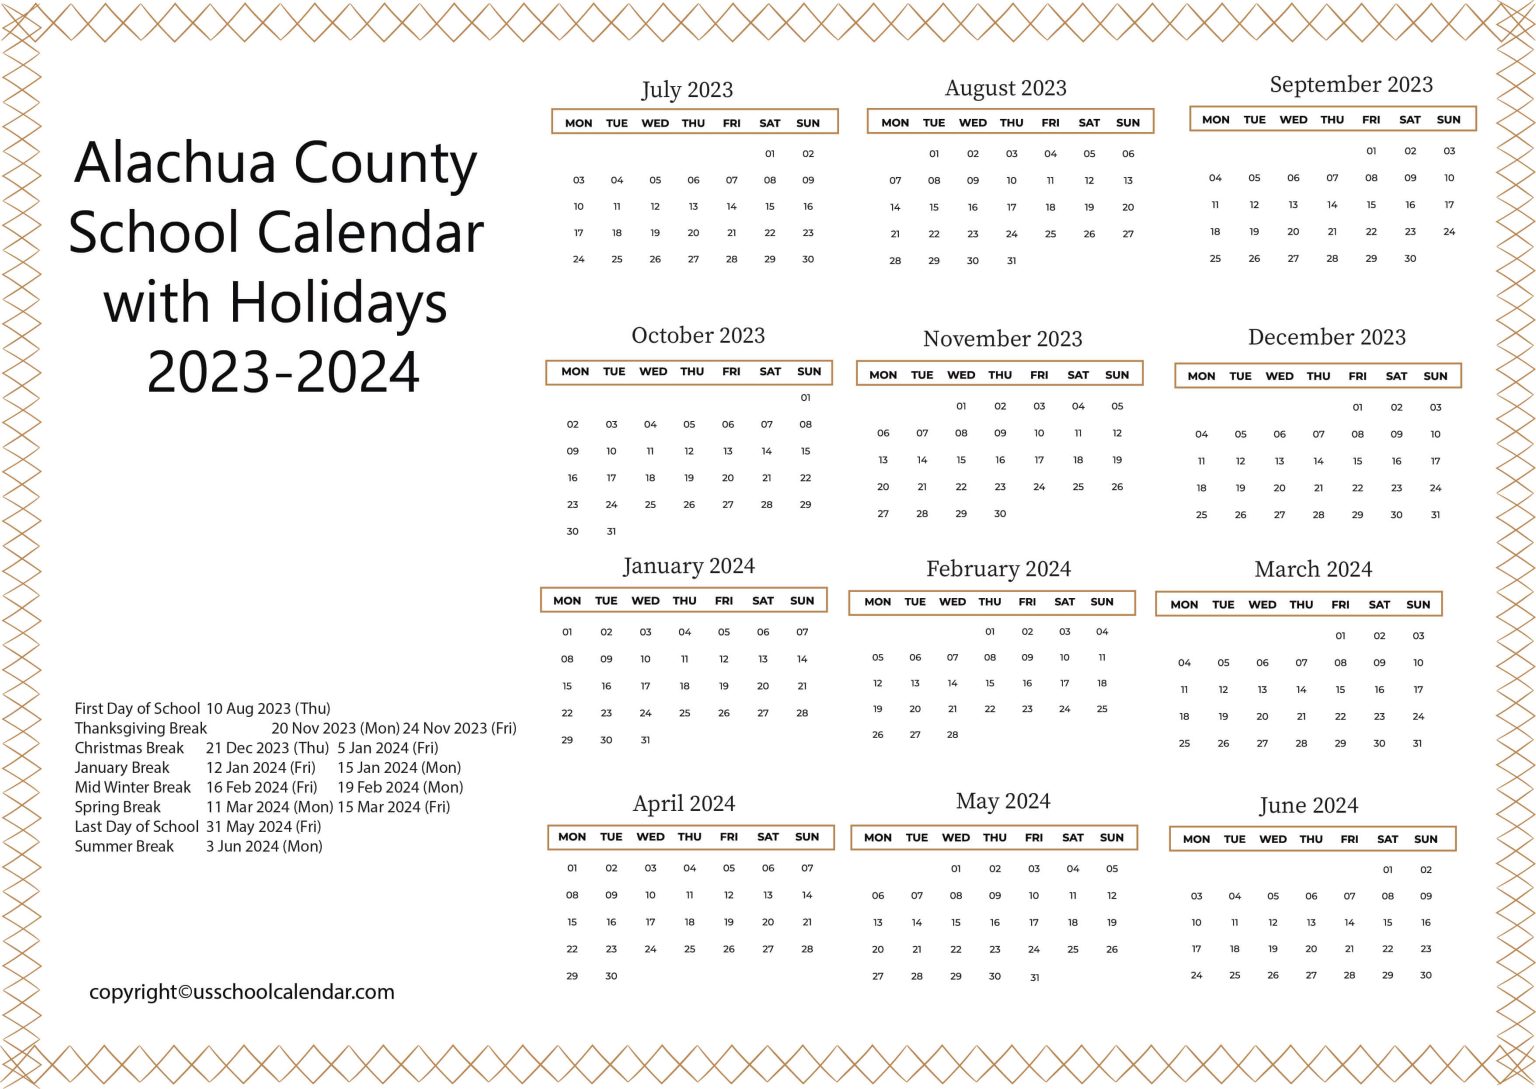 Alachua County School Calendar with Holidays 2023-2024